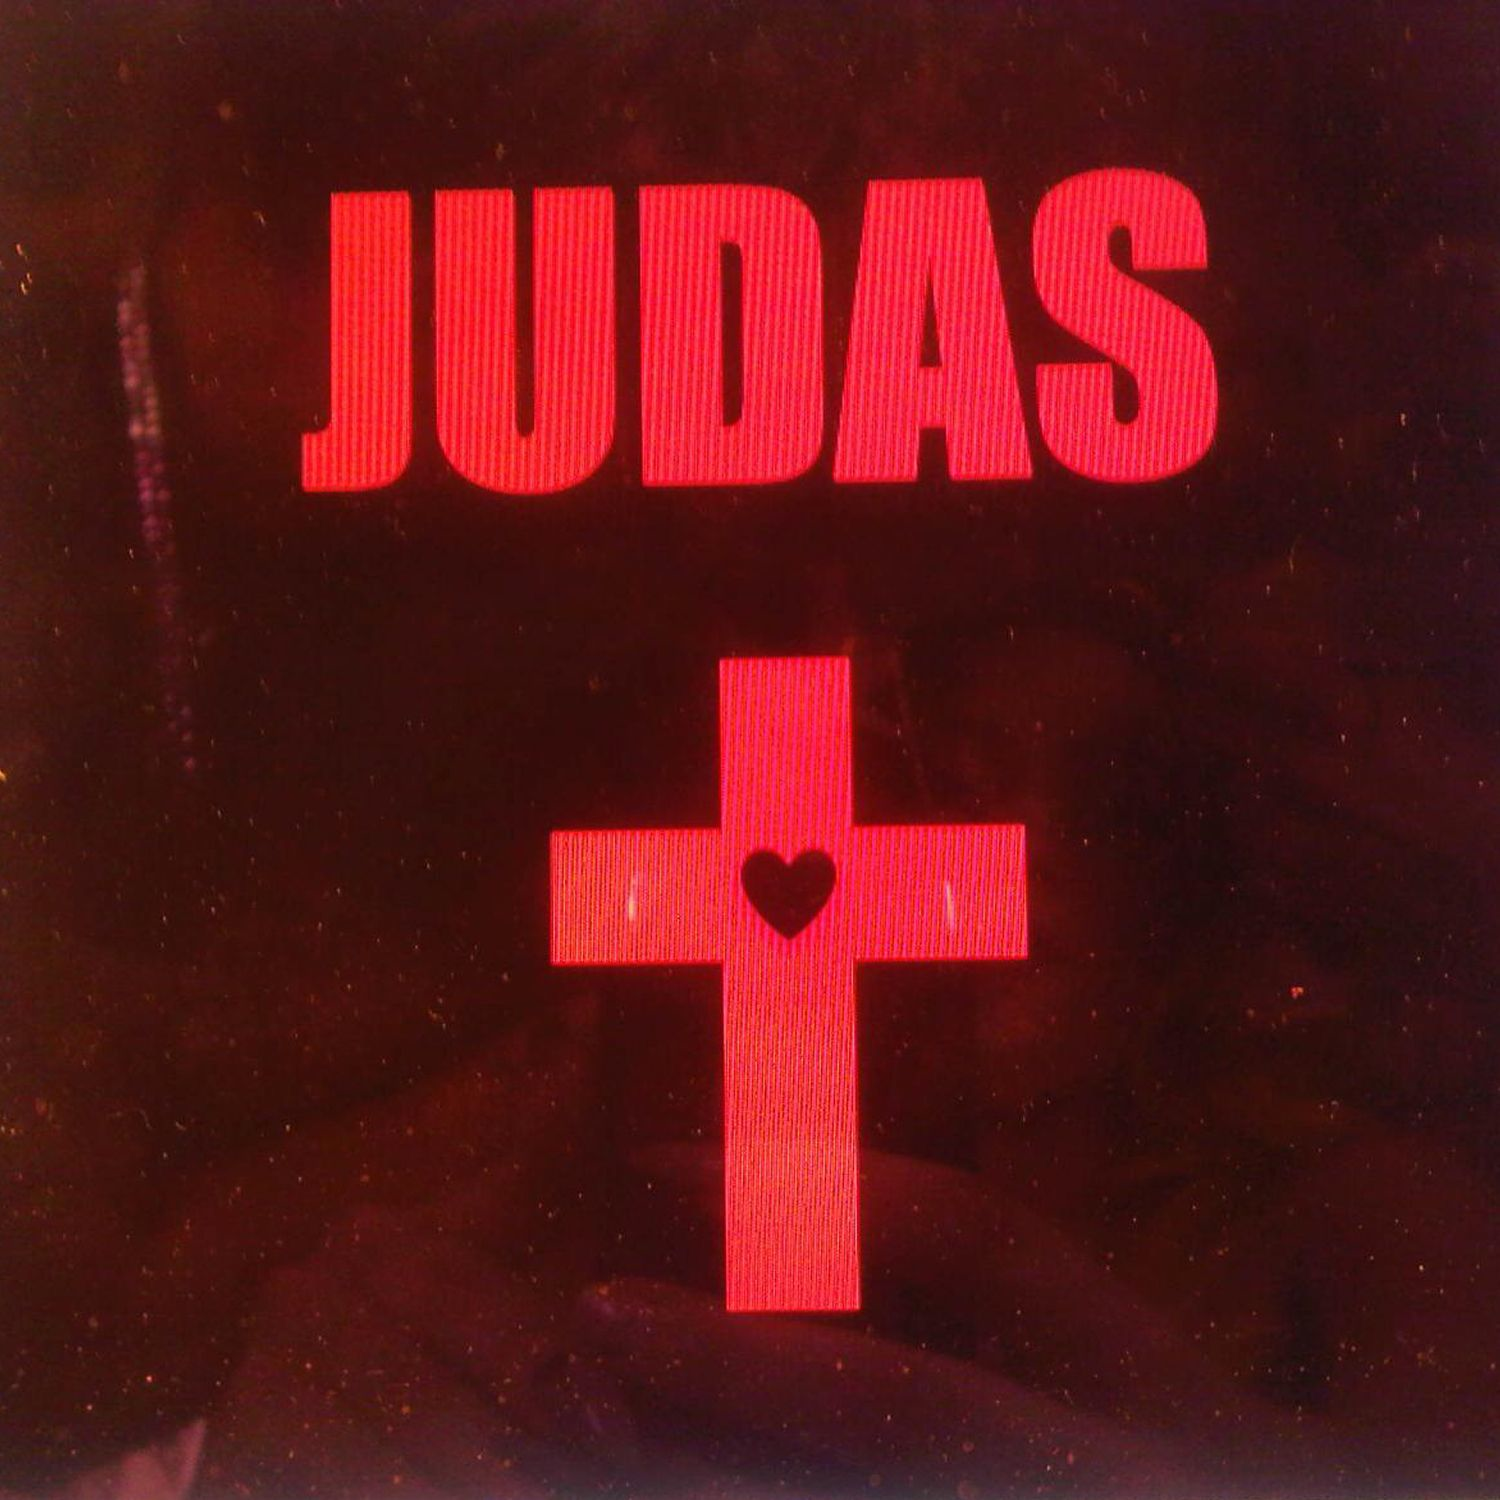 Judas [1936]